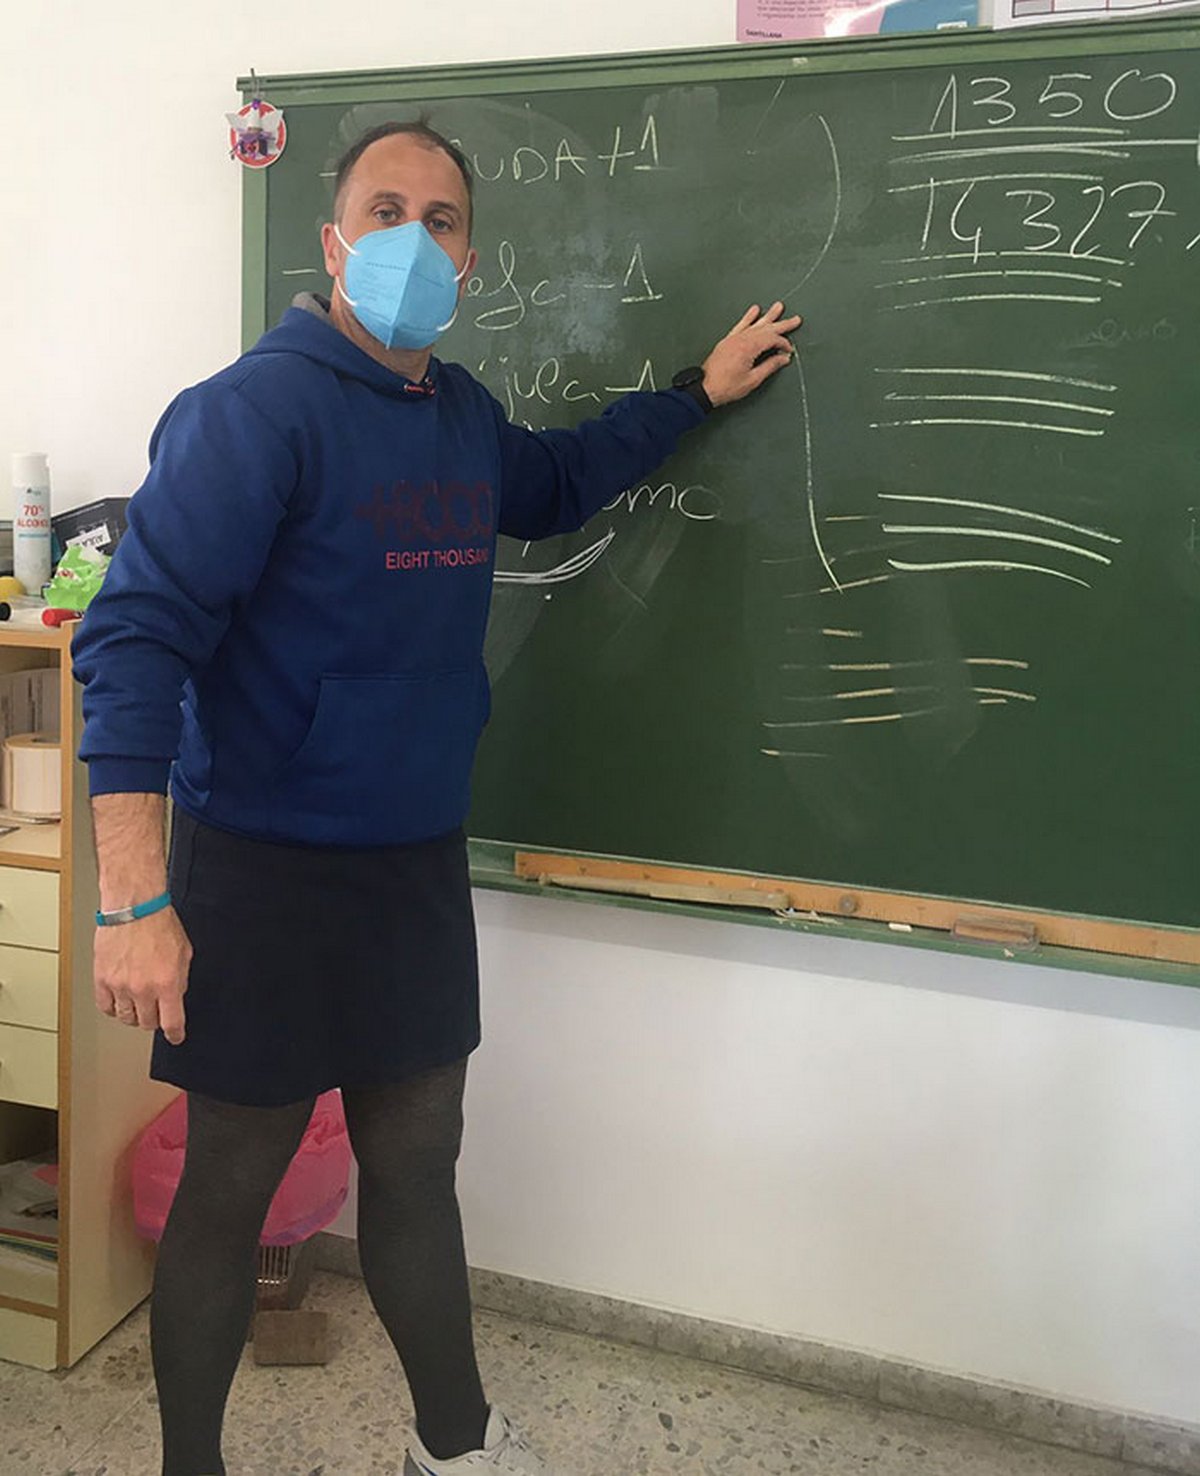 Des enseignants portent des jupes en classe pour protester contre le renvoi d’un élève qui en portait une